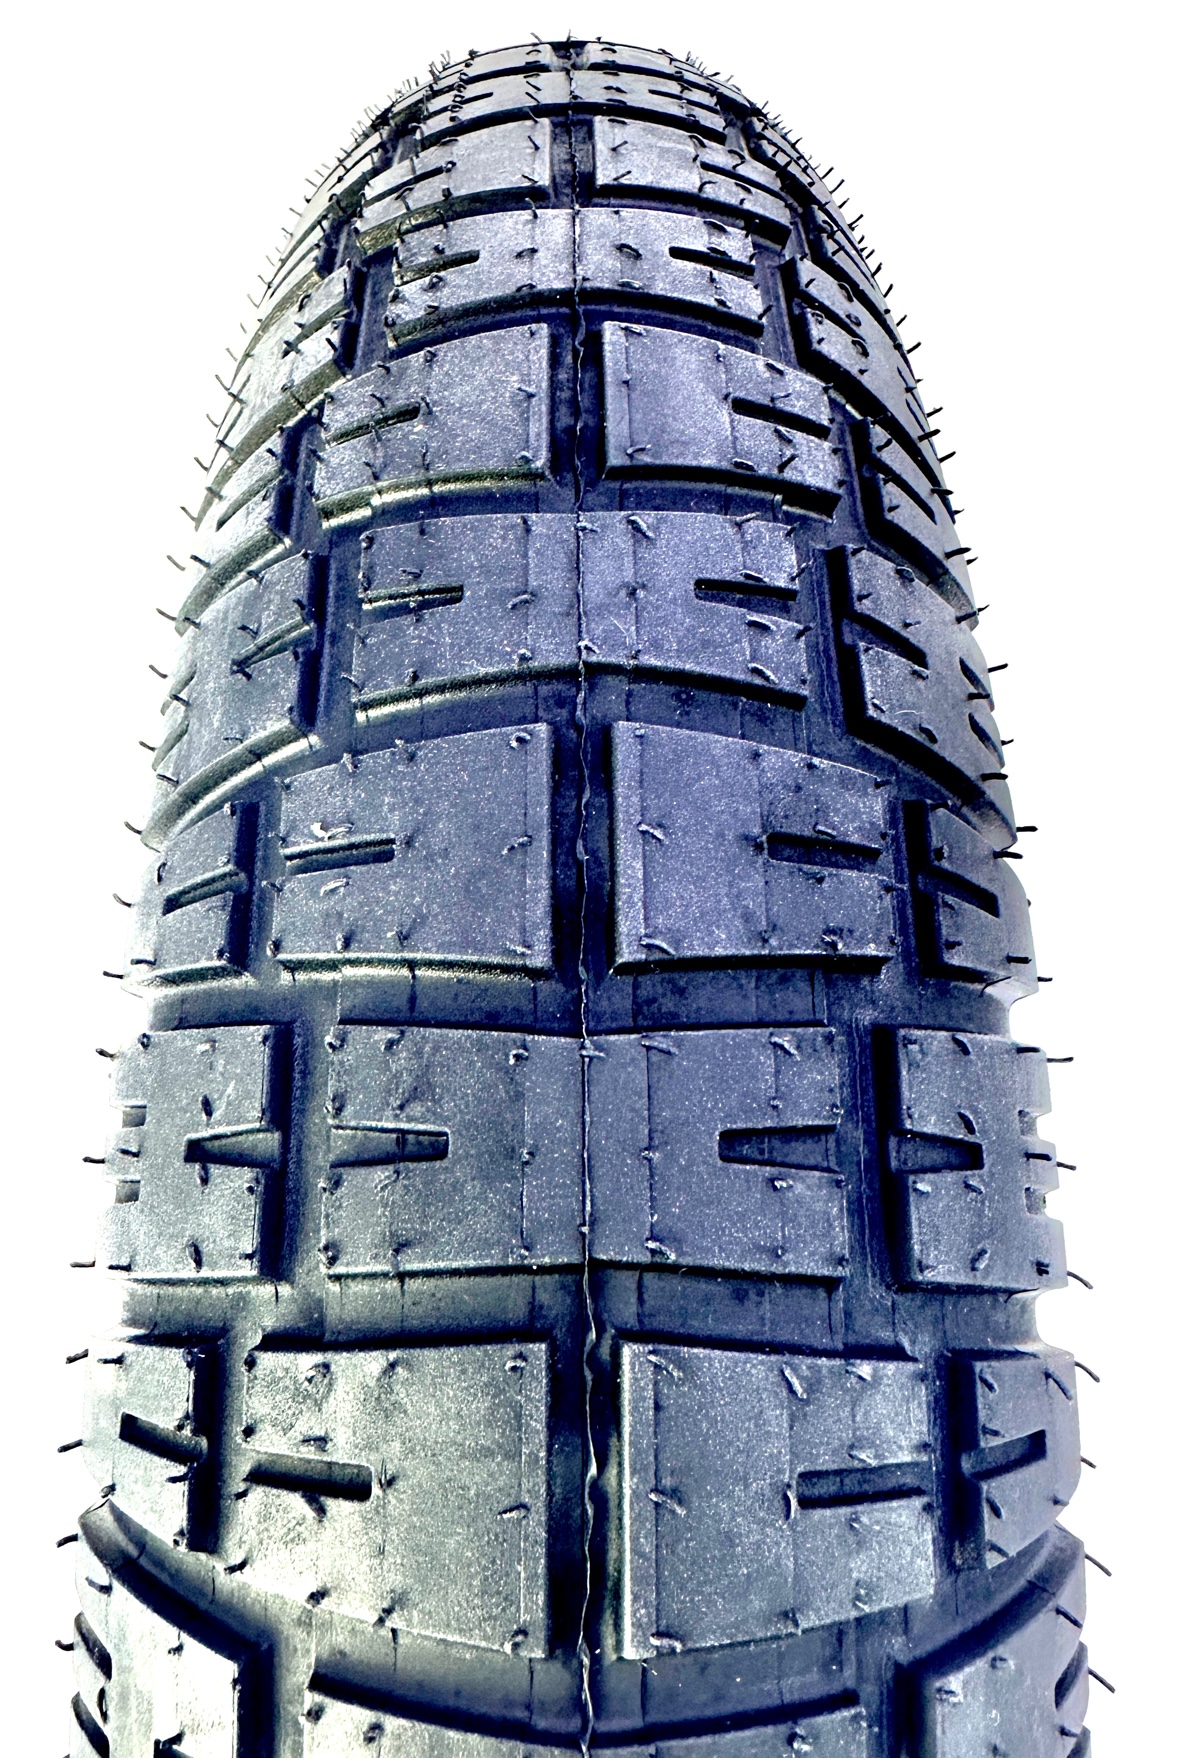 Kenda Knight tire 20 x 4.5 pure black